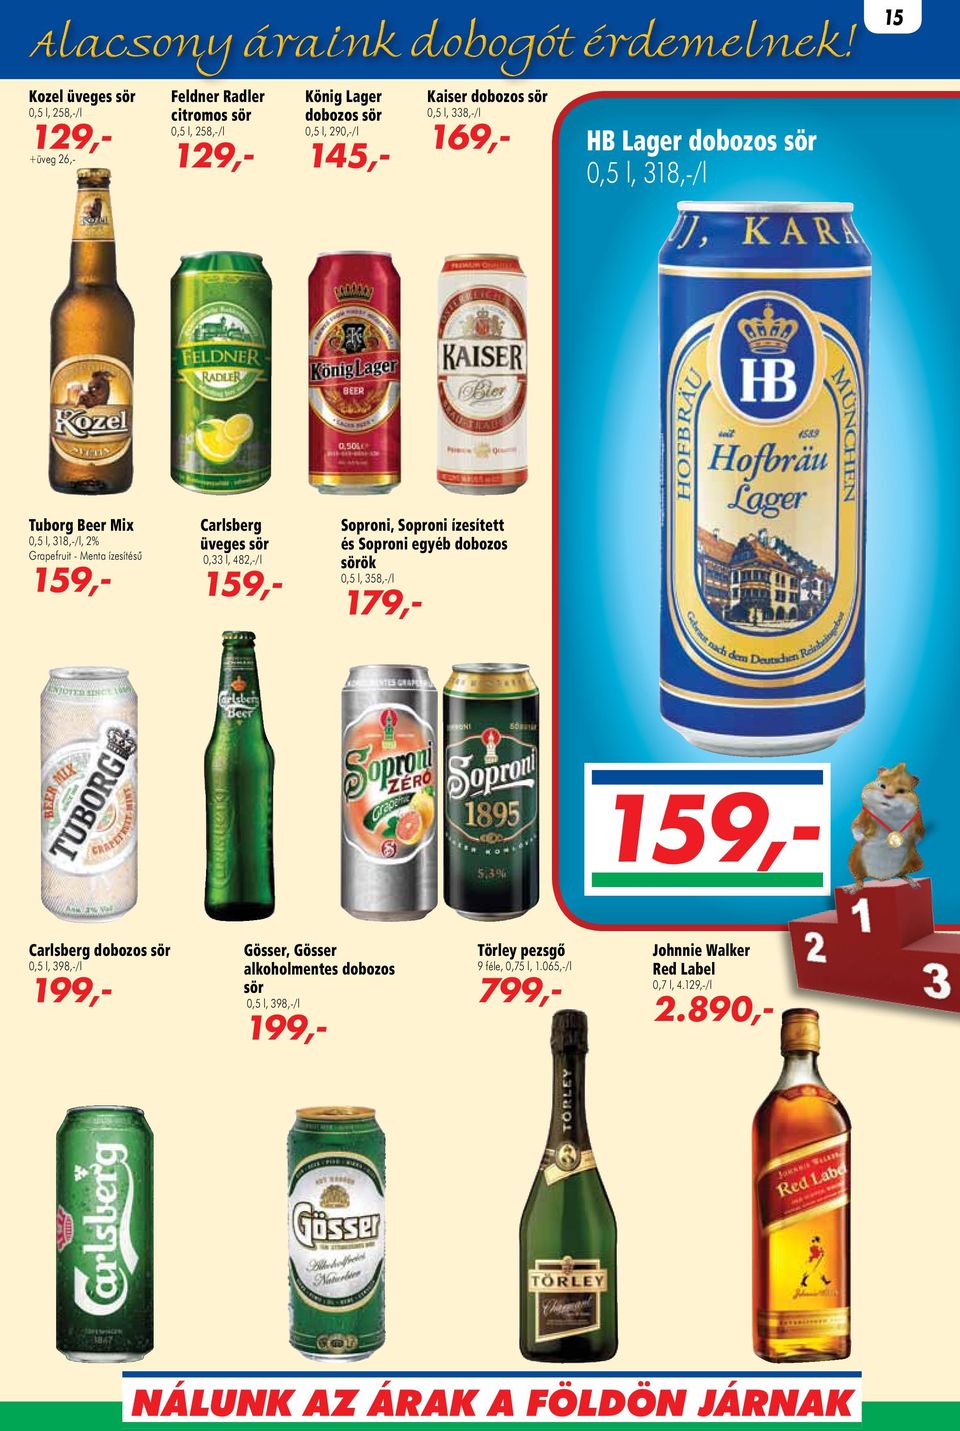 üveges sör 0,33 l, 482,-/l 159,- Soproni, Soproni ízesített és Soproni egyéb dobozos sörök 0,5 l, 358,-/l 179,- 159,- Carlsberg dobozos sör 0,5 l, 398,-/l